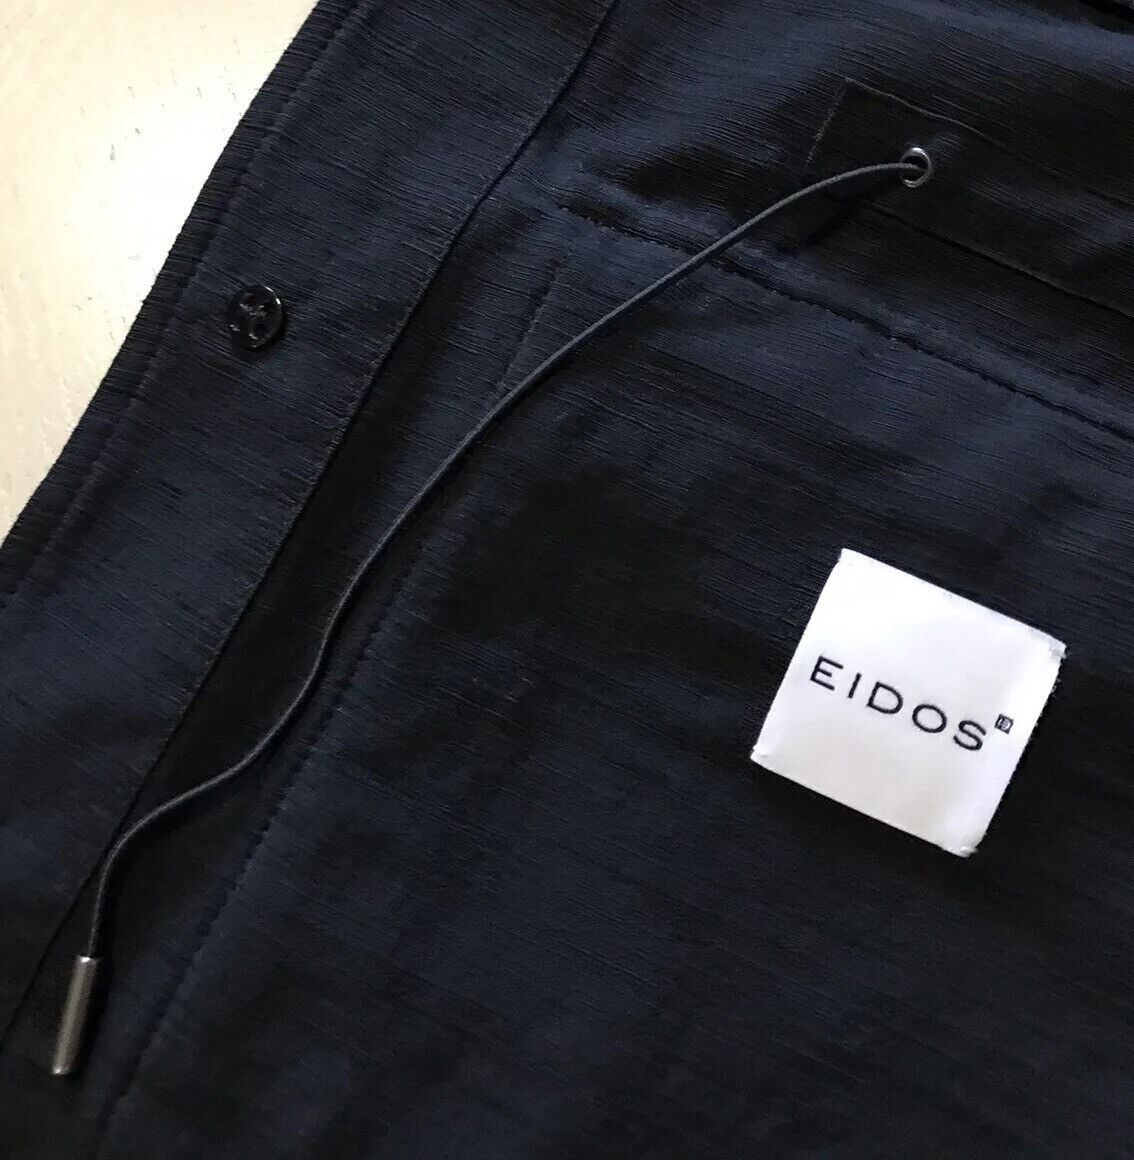 NWT $2195 Eidos Men’s Textured Stylish Jacket Coat Black 38 US ( 48 Ei ) Italy